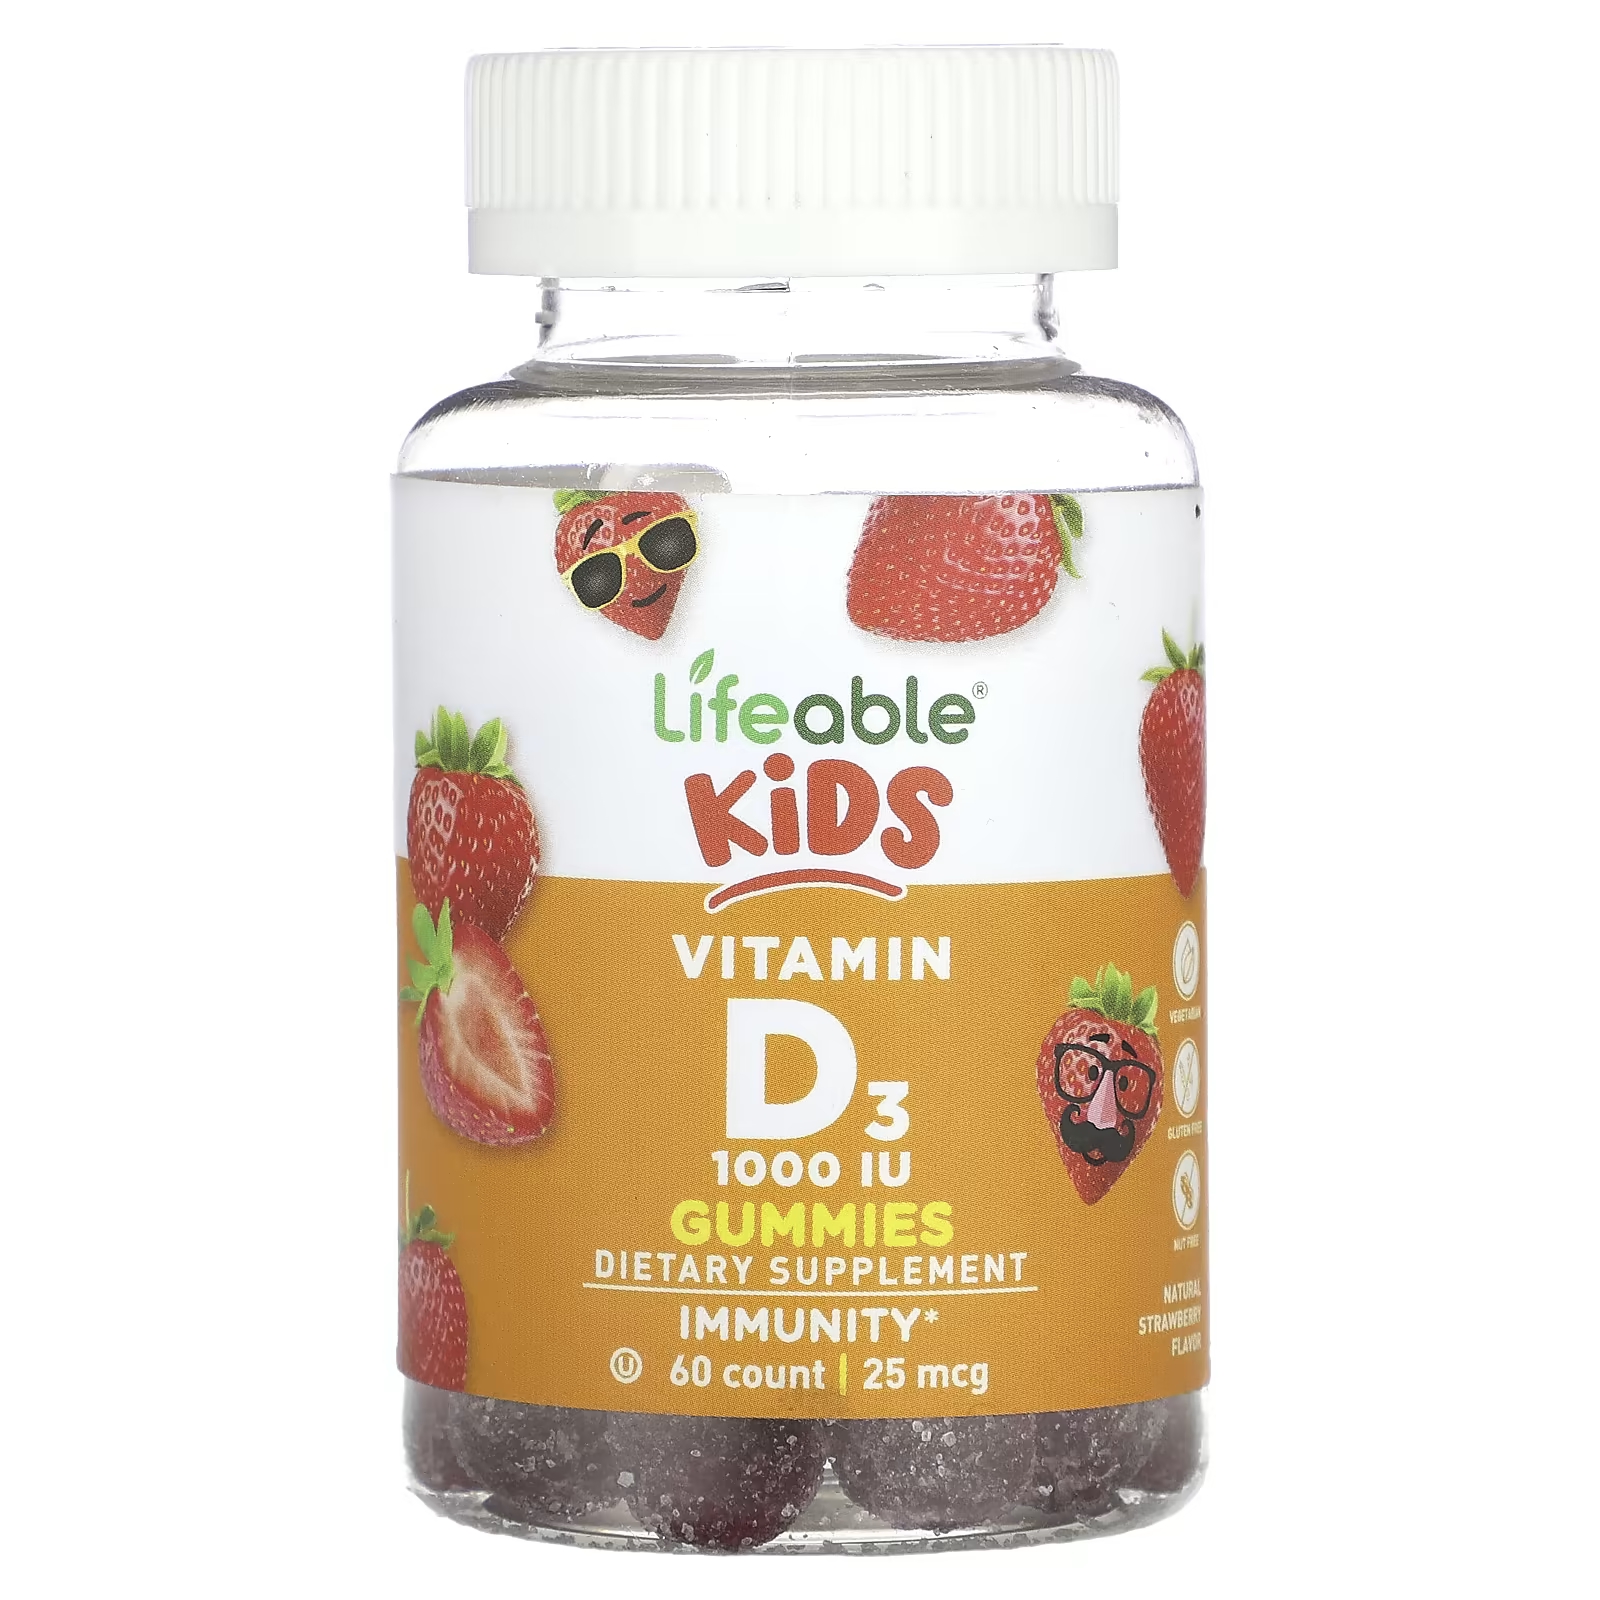 Жевательные конфеты Lifeable Kids с витамином D3, натуральная клубника, 25 мкг (1000 МЕ), 60 жевательных таблеток lifeable детский витамин d3 натуральная клубника 25 мкг 1000 ме 60 жевательных таблеток